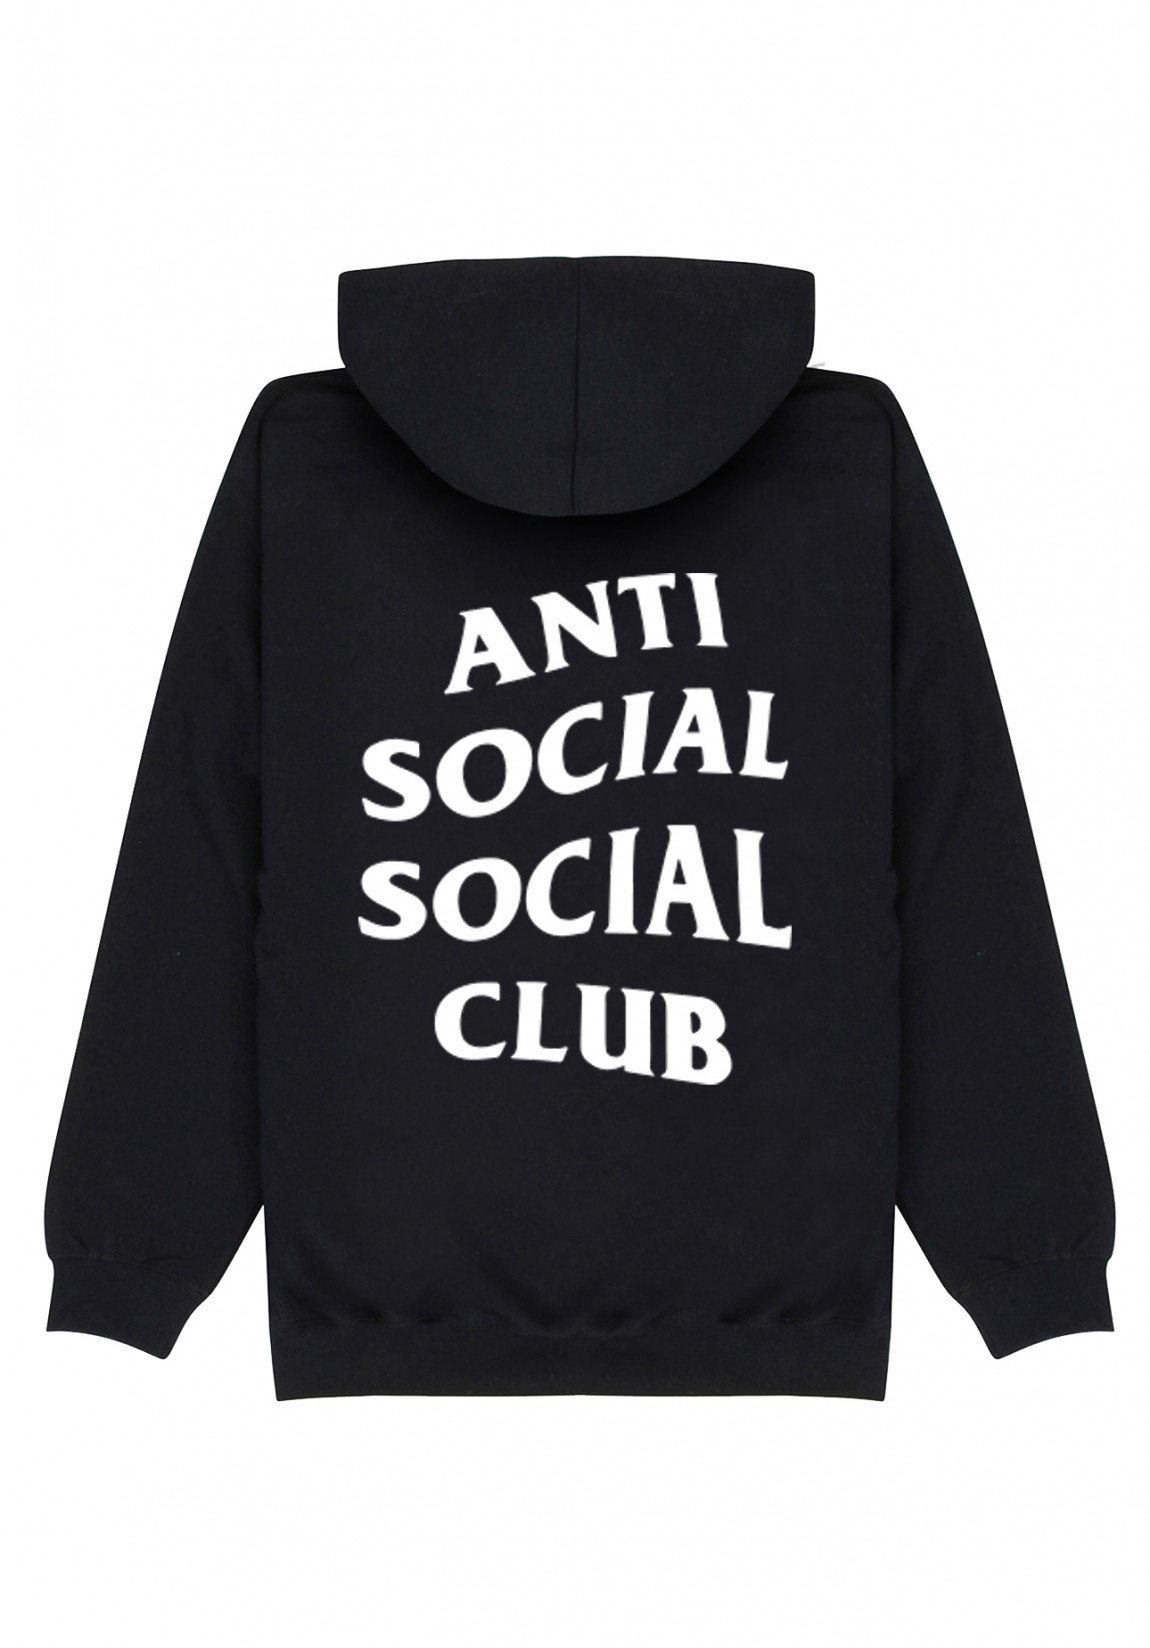 download social club.dll for la noire